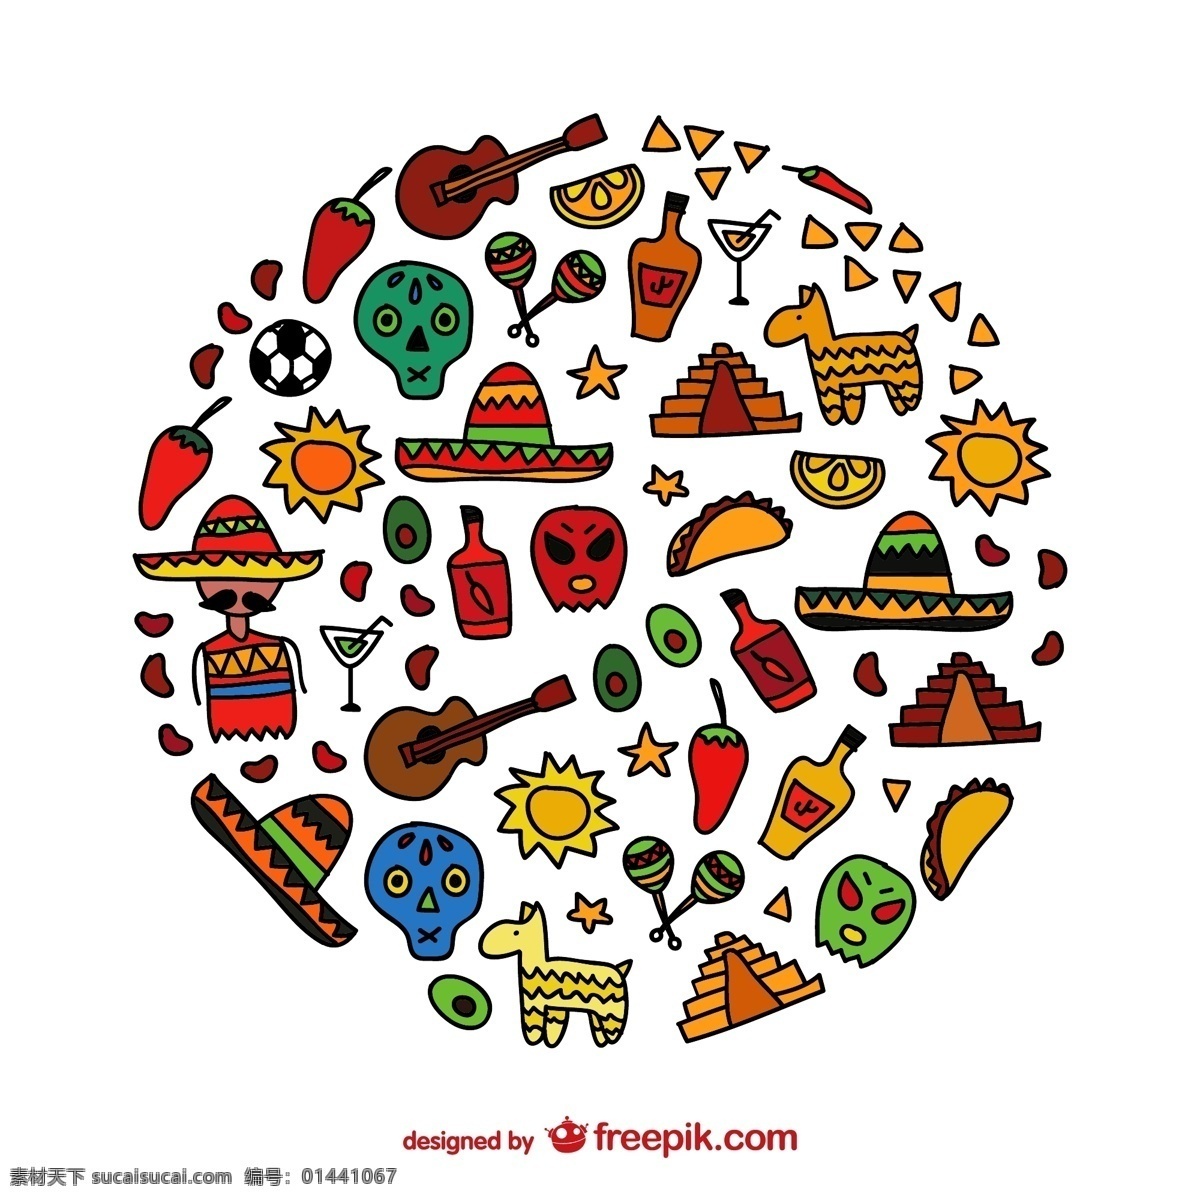 彩绘 墨西哥 元素 ai格式 辣椒 矢量图 太阳 图标 矢量 水晶头骨 玛雅文化